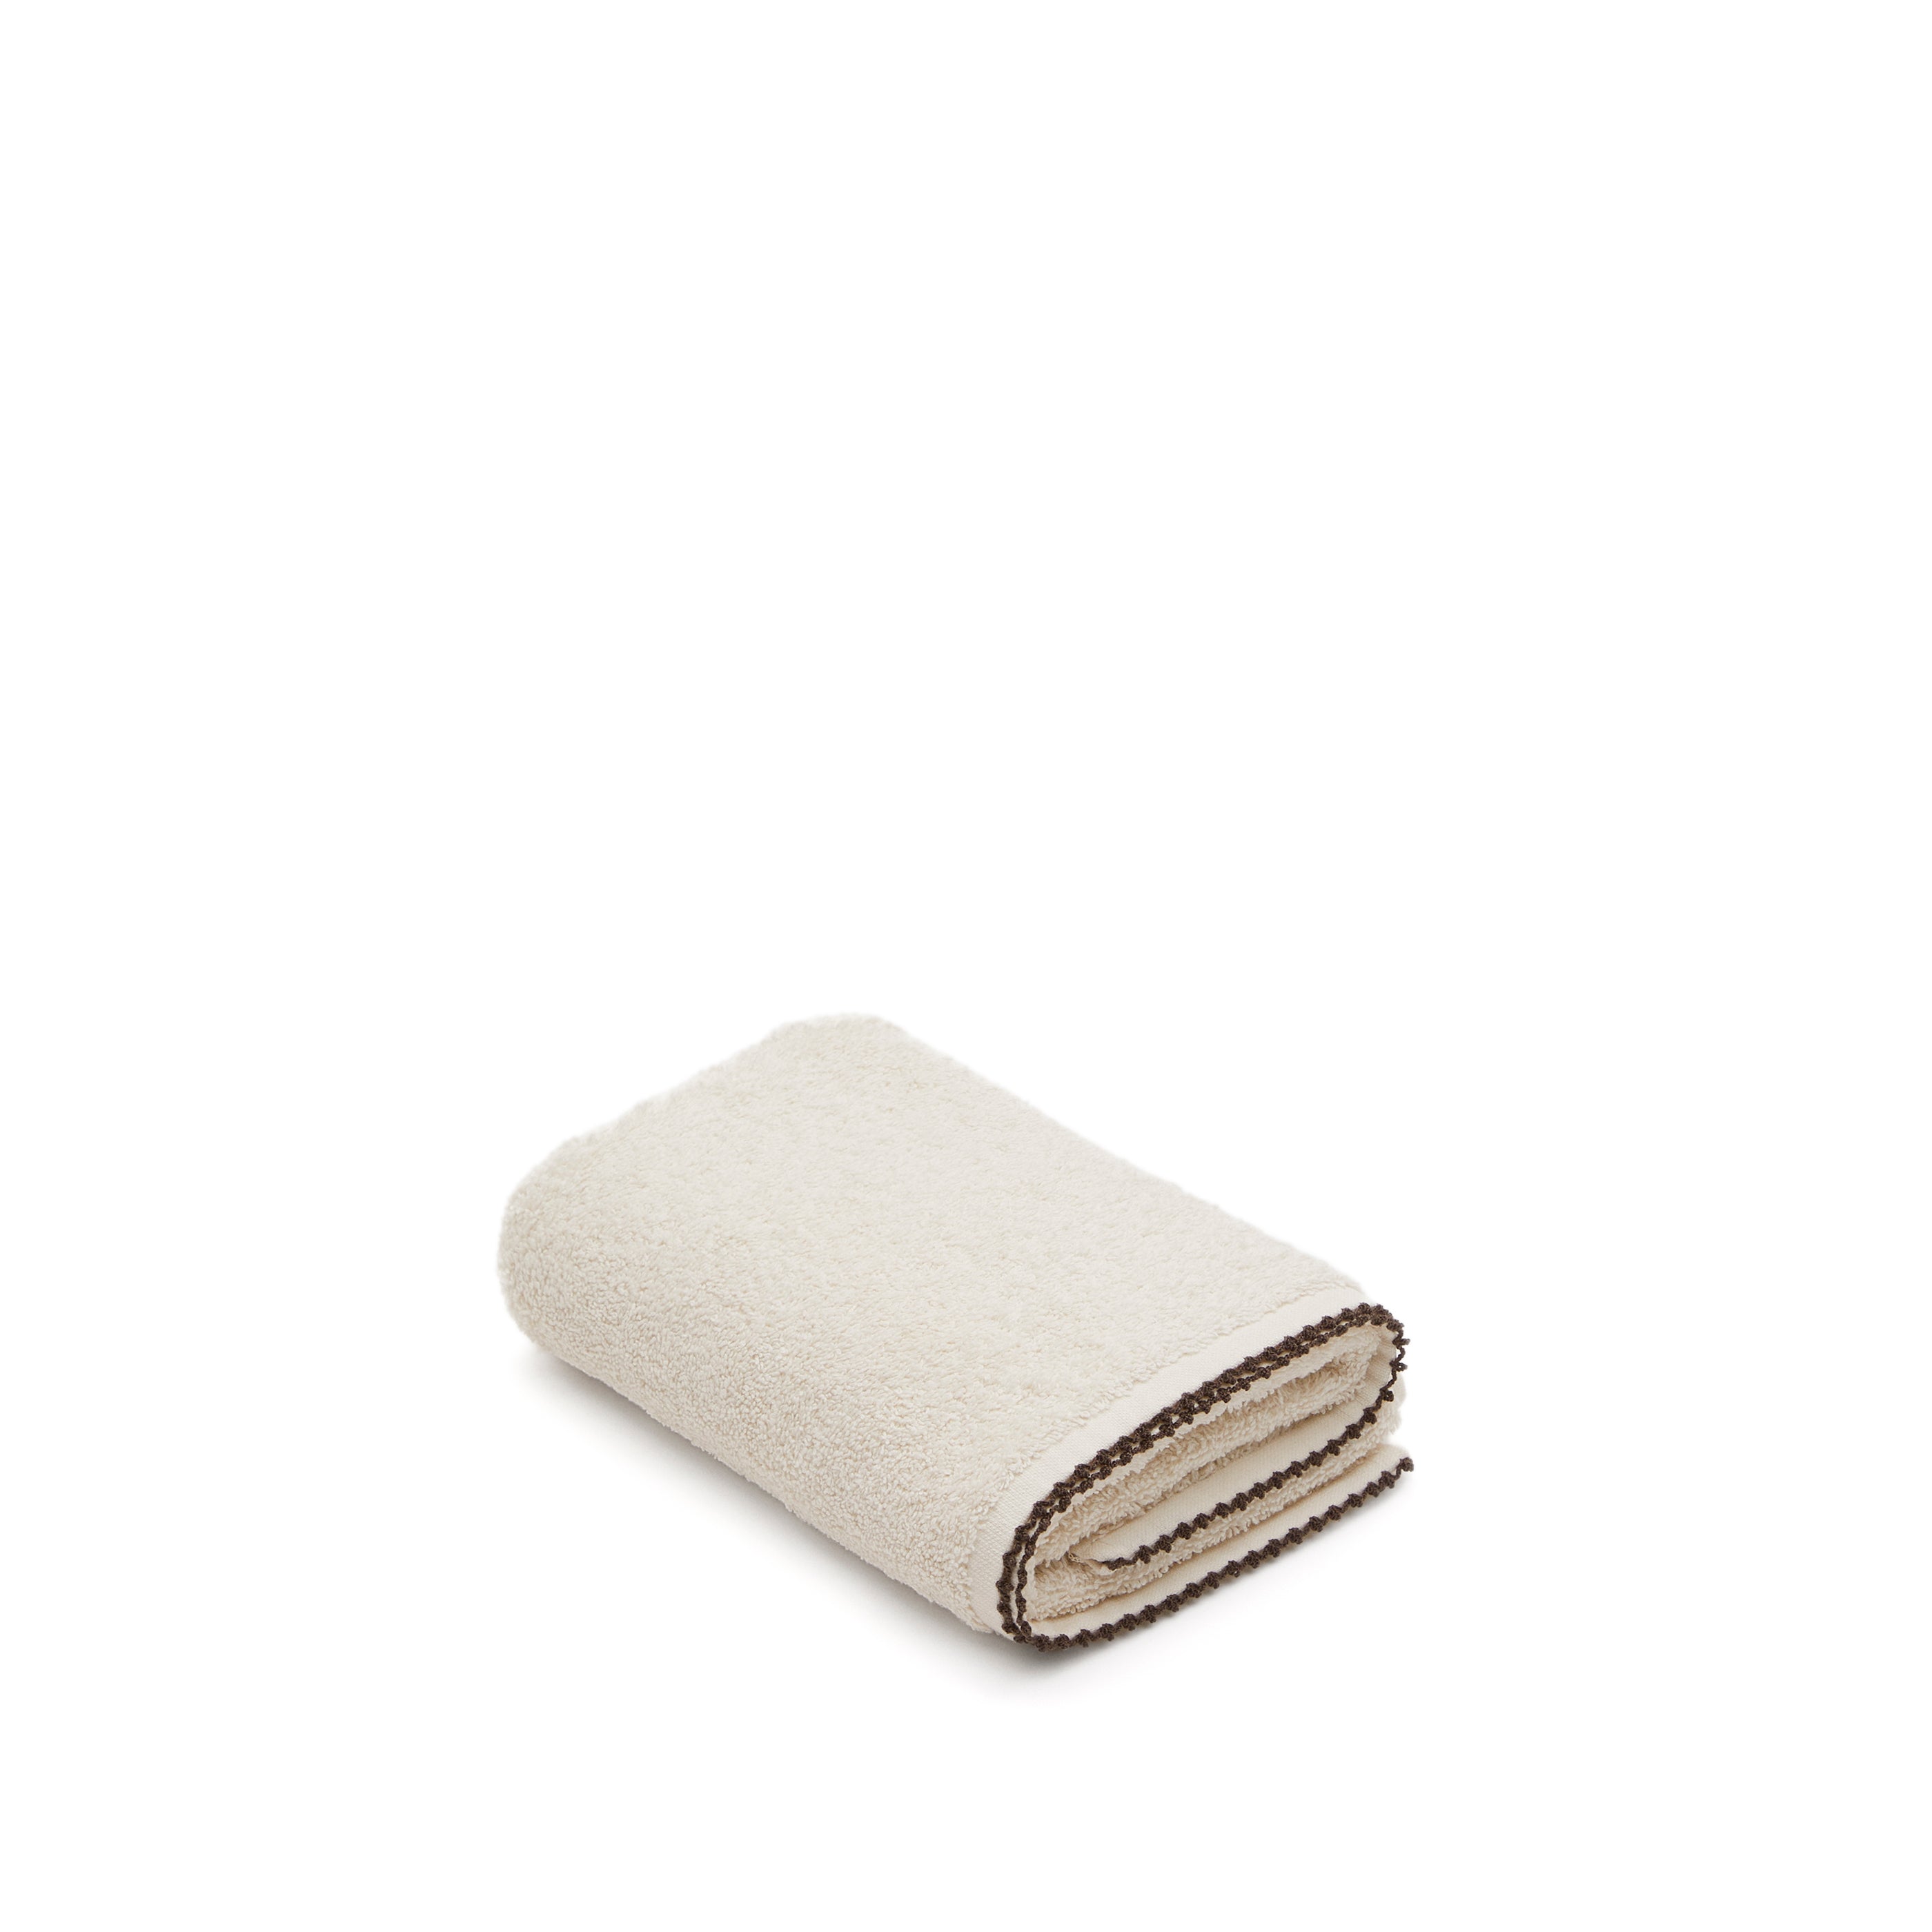 Sinami guest towel, 100% beige cotton, with contrasting black details, 30 x 50 cm